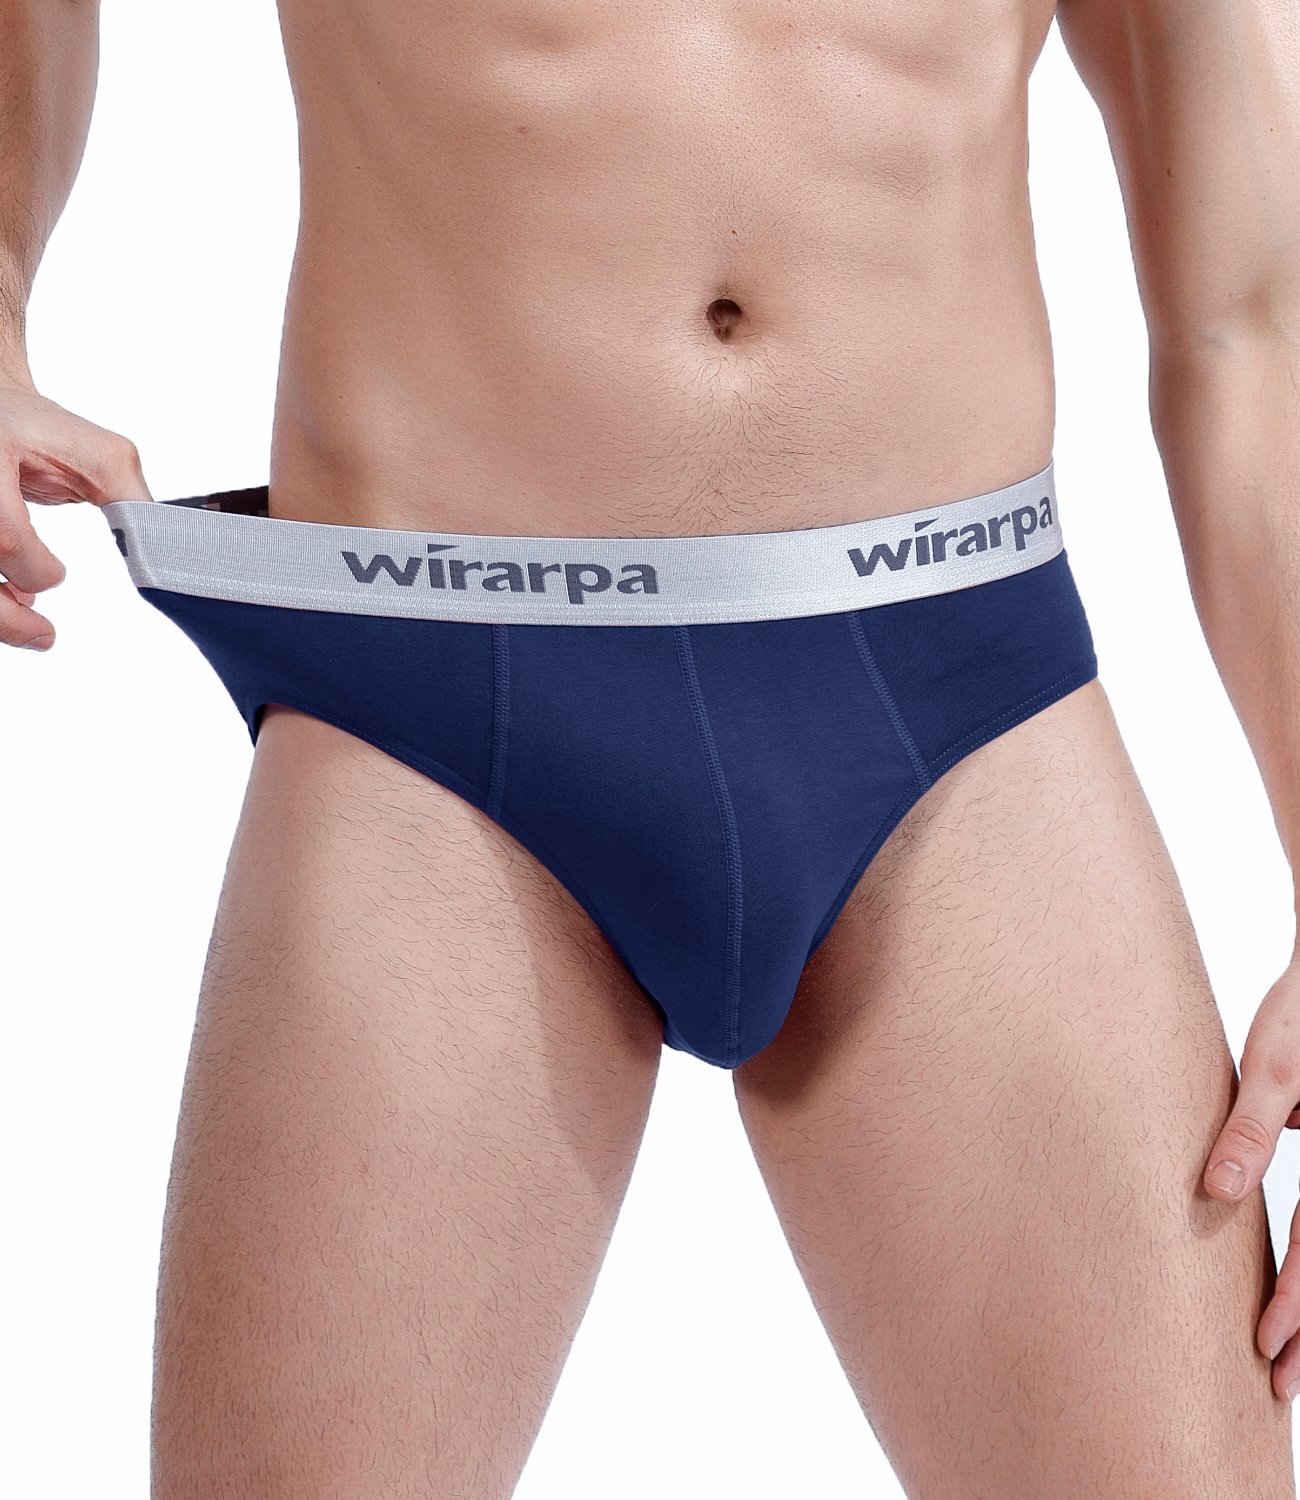 wirarpa Men's Cotton Stretch Underwear Support Indonesia